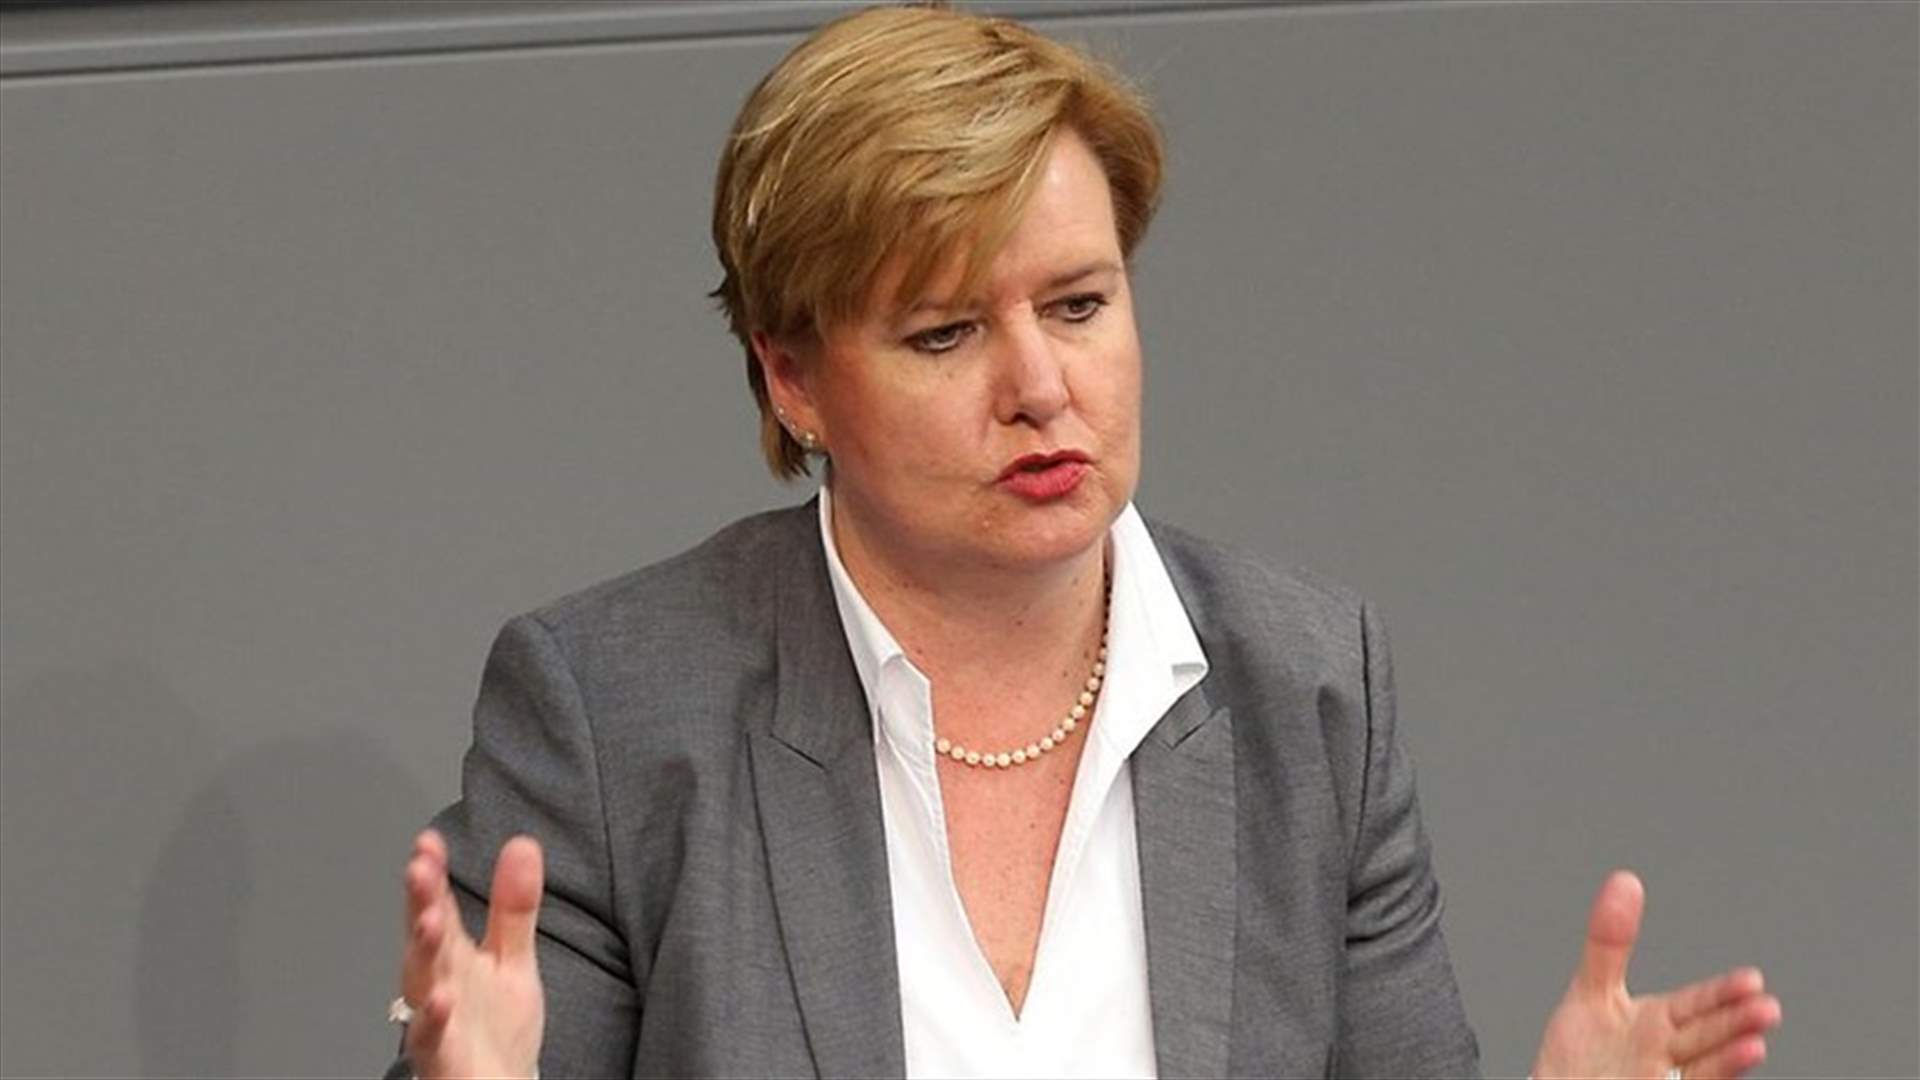 بالفيديو - غضب عارم ضد نائب في البرلمان الألماني... ماذا فعلت؟